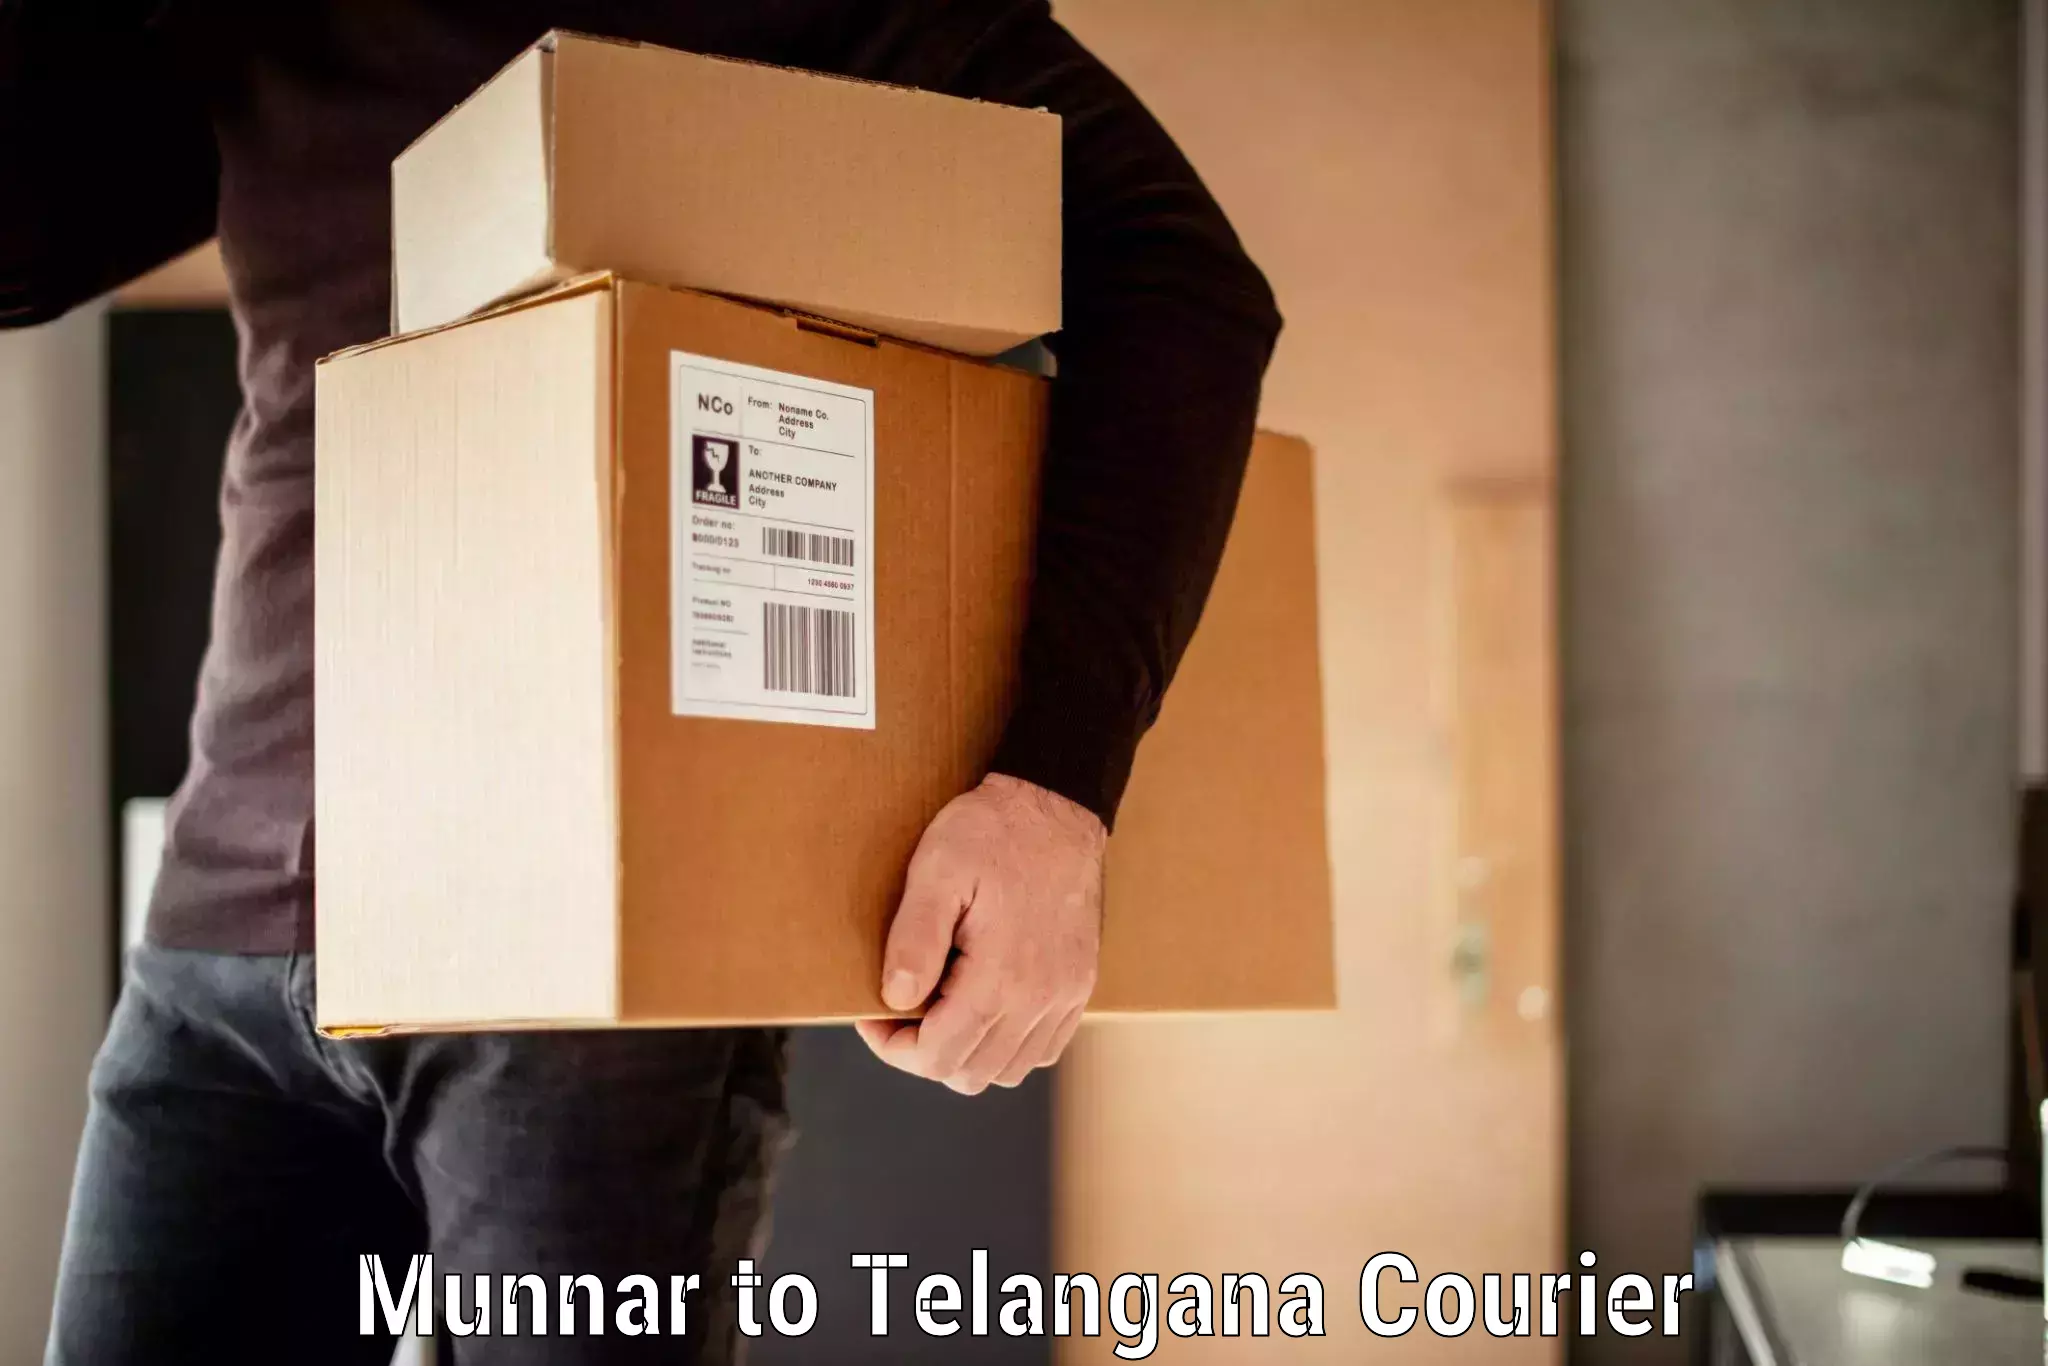 Baggage transport innovation Munnar to Pargi